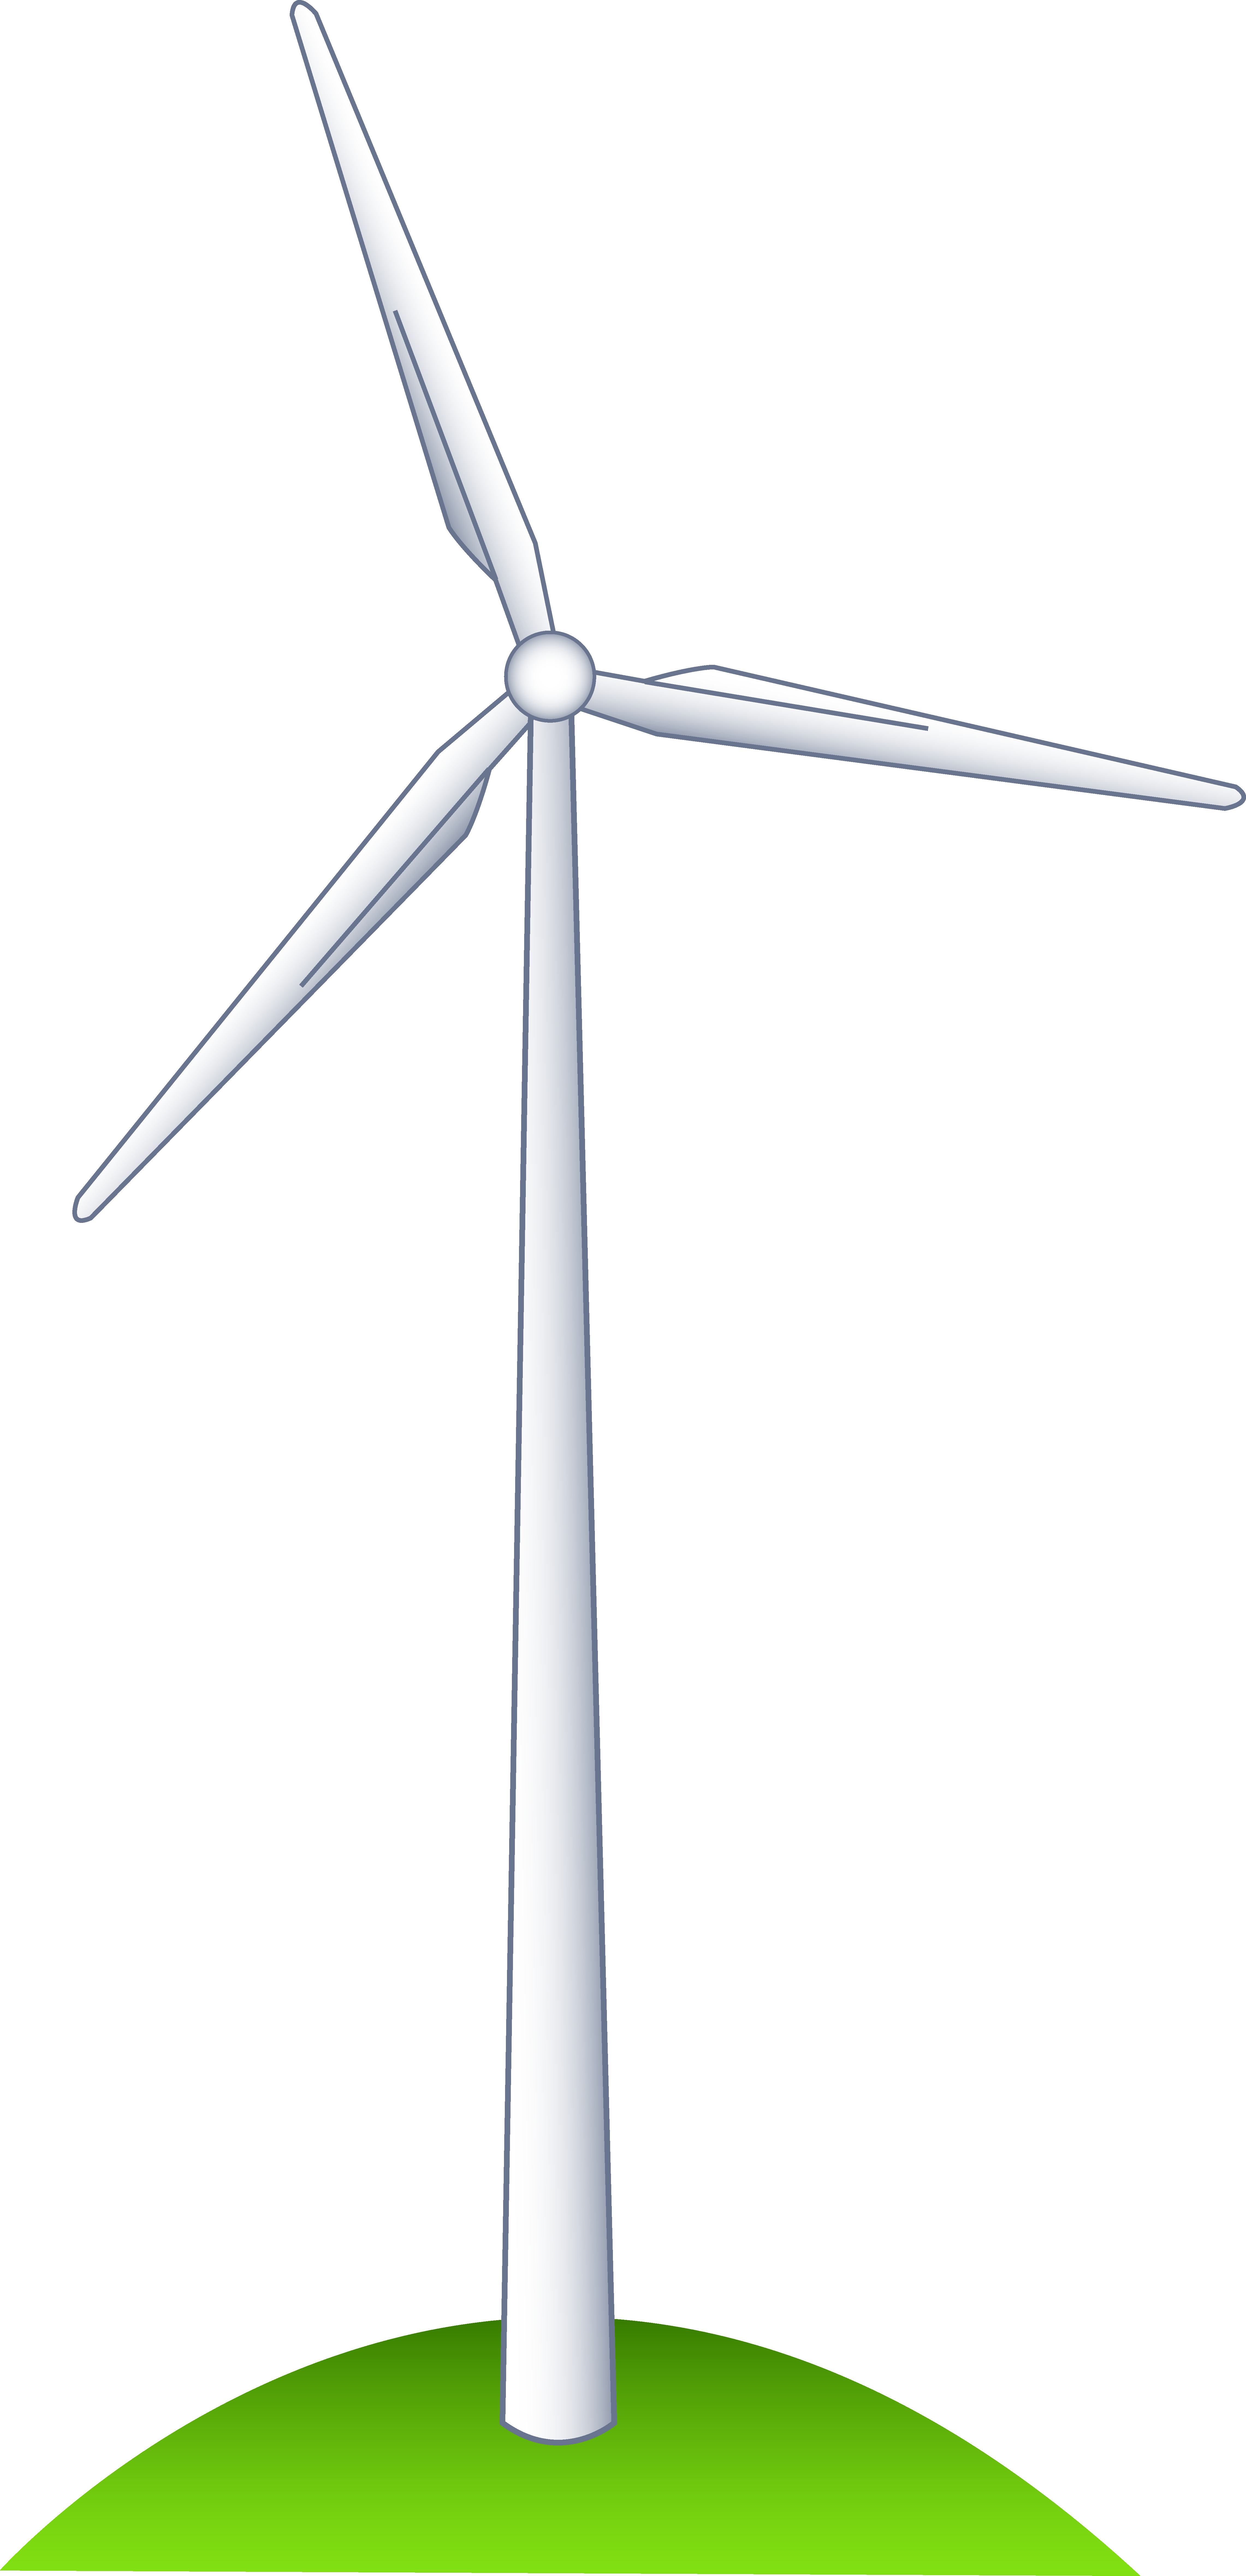 A Wind Turbine on a Hill - Wind Turbine Clipart